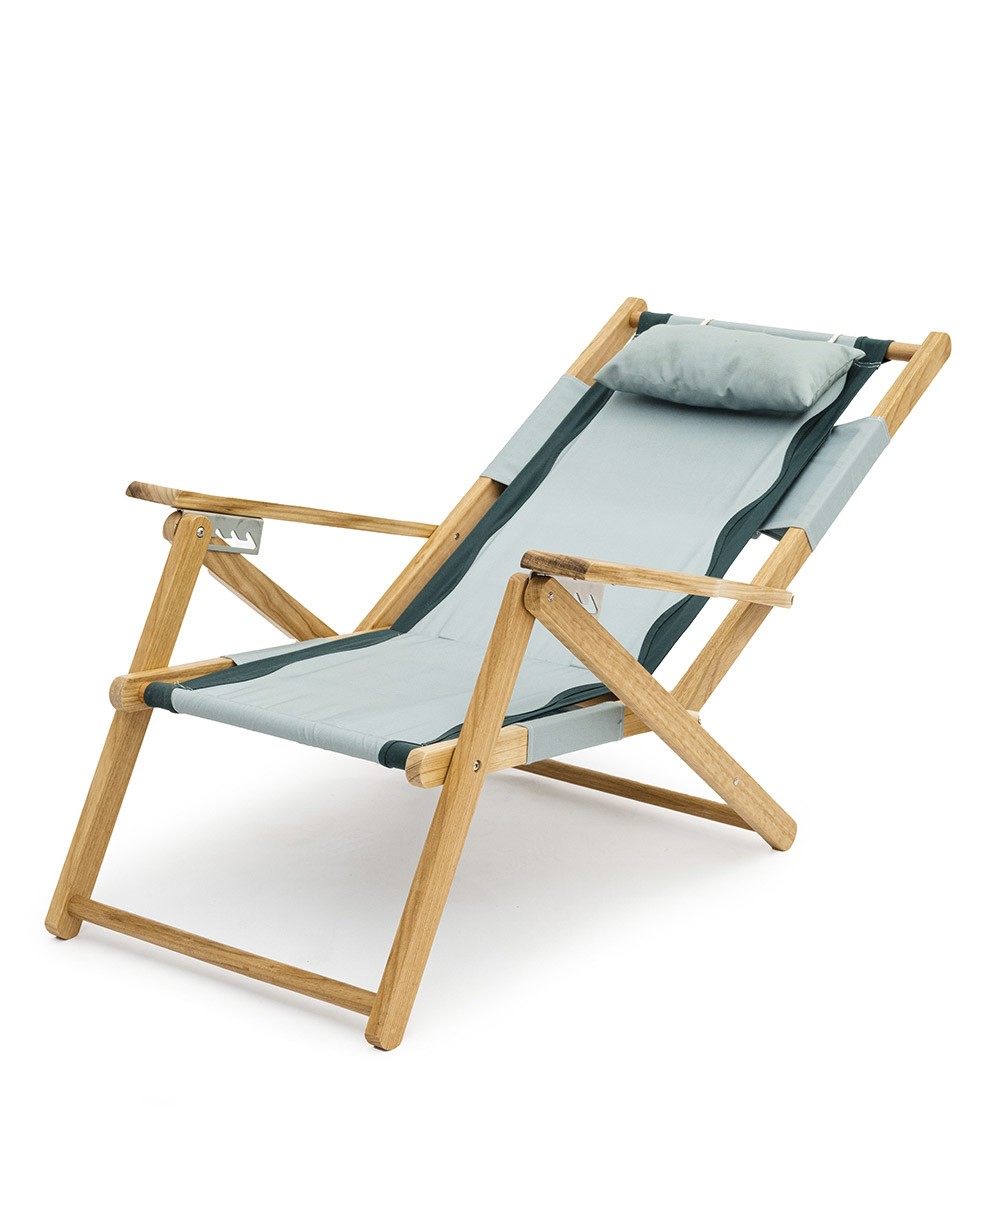 Hier abgebildet ist der The Tommy Chair in Rivie Green von Business & Pleasure Co. – im RAUM concept store